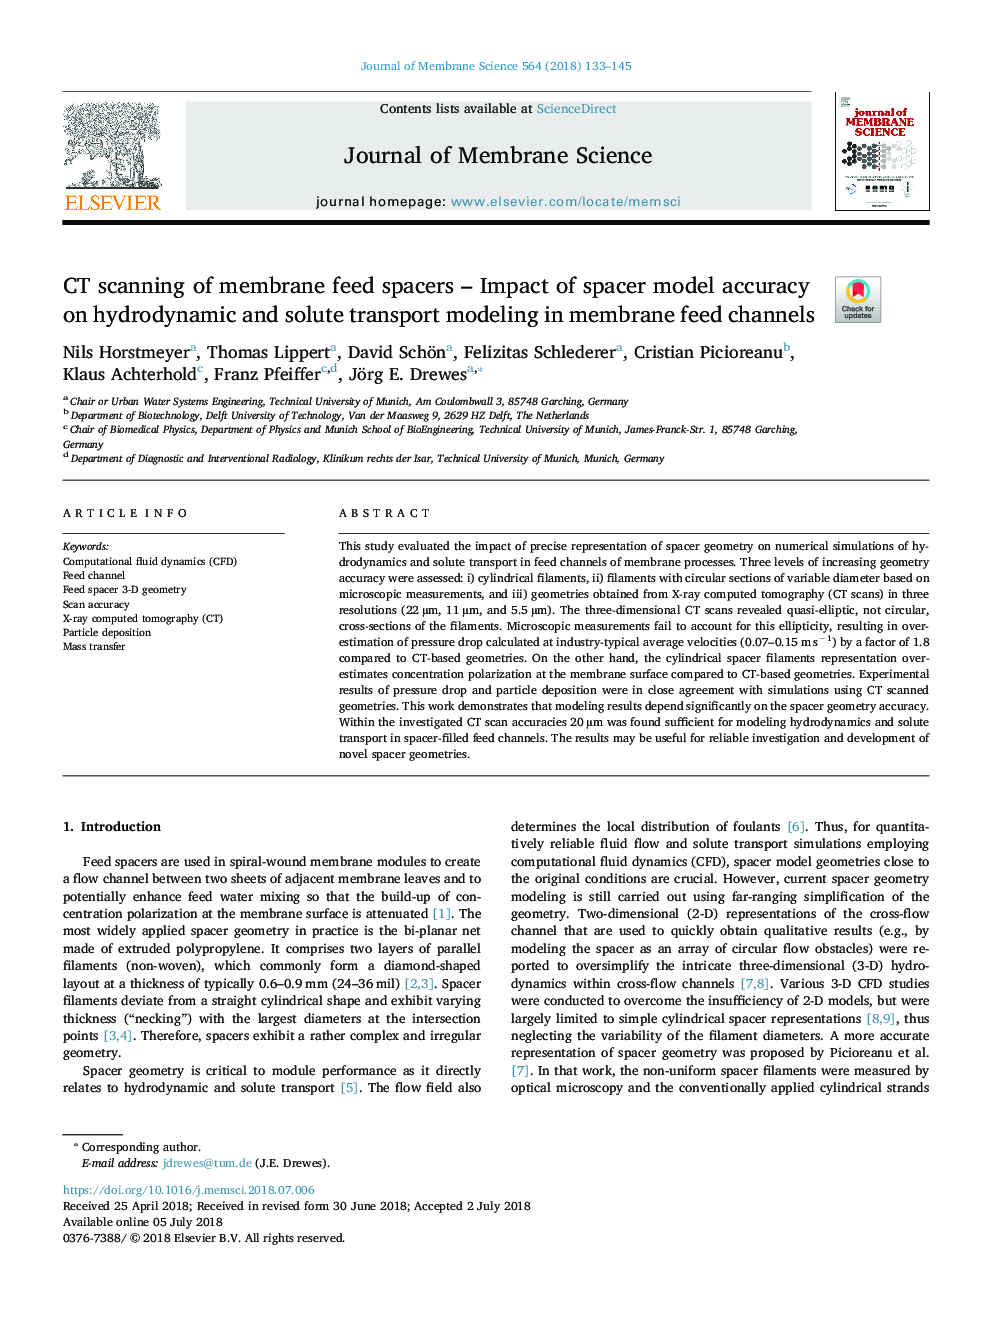 سی تی اسکن اسپاررهای تغذیه غشاء - تاثیر دقت مدل اسپارر در مدل سازی حمل و نقل هیدرودینامیکی و حلال در کانال های تغذیه غشایی 